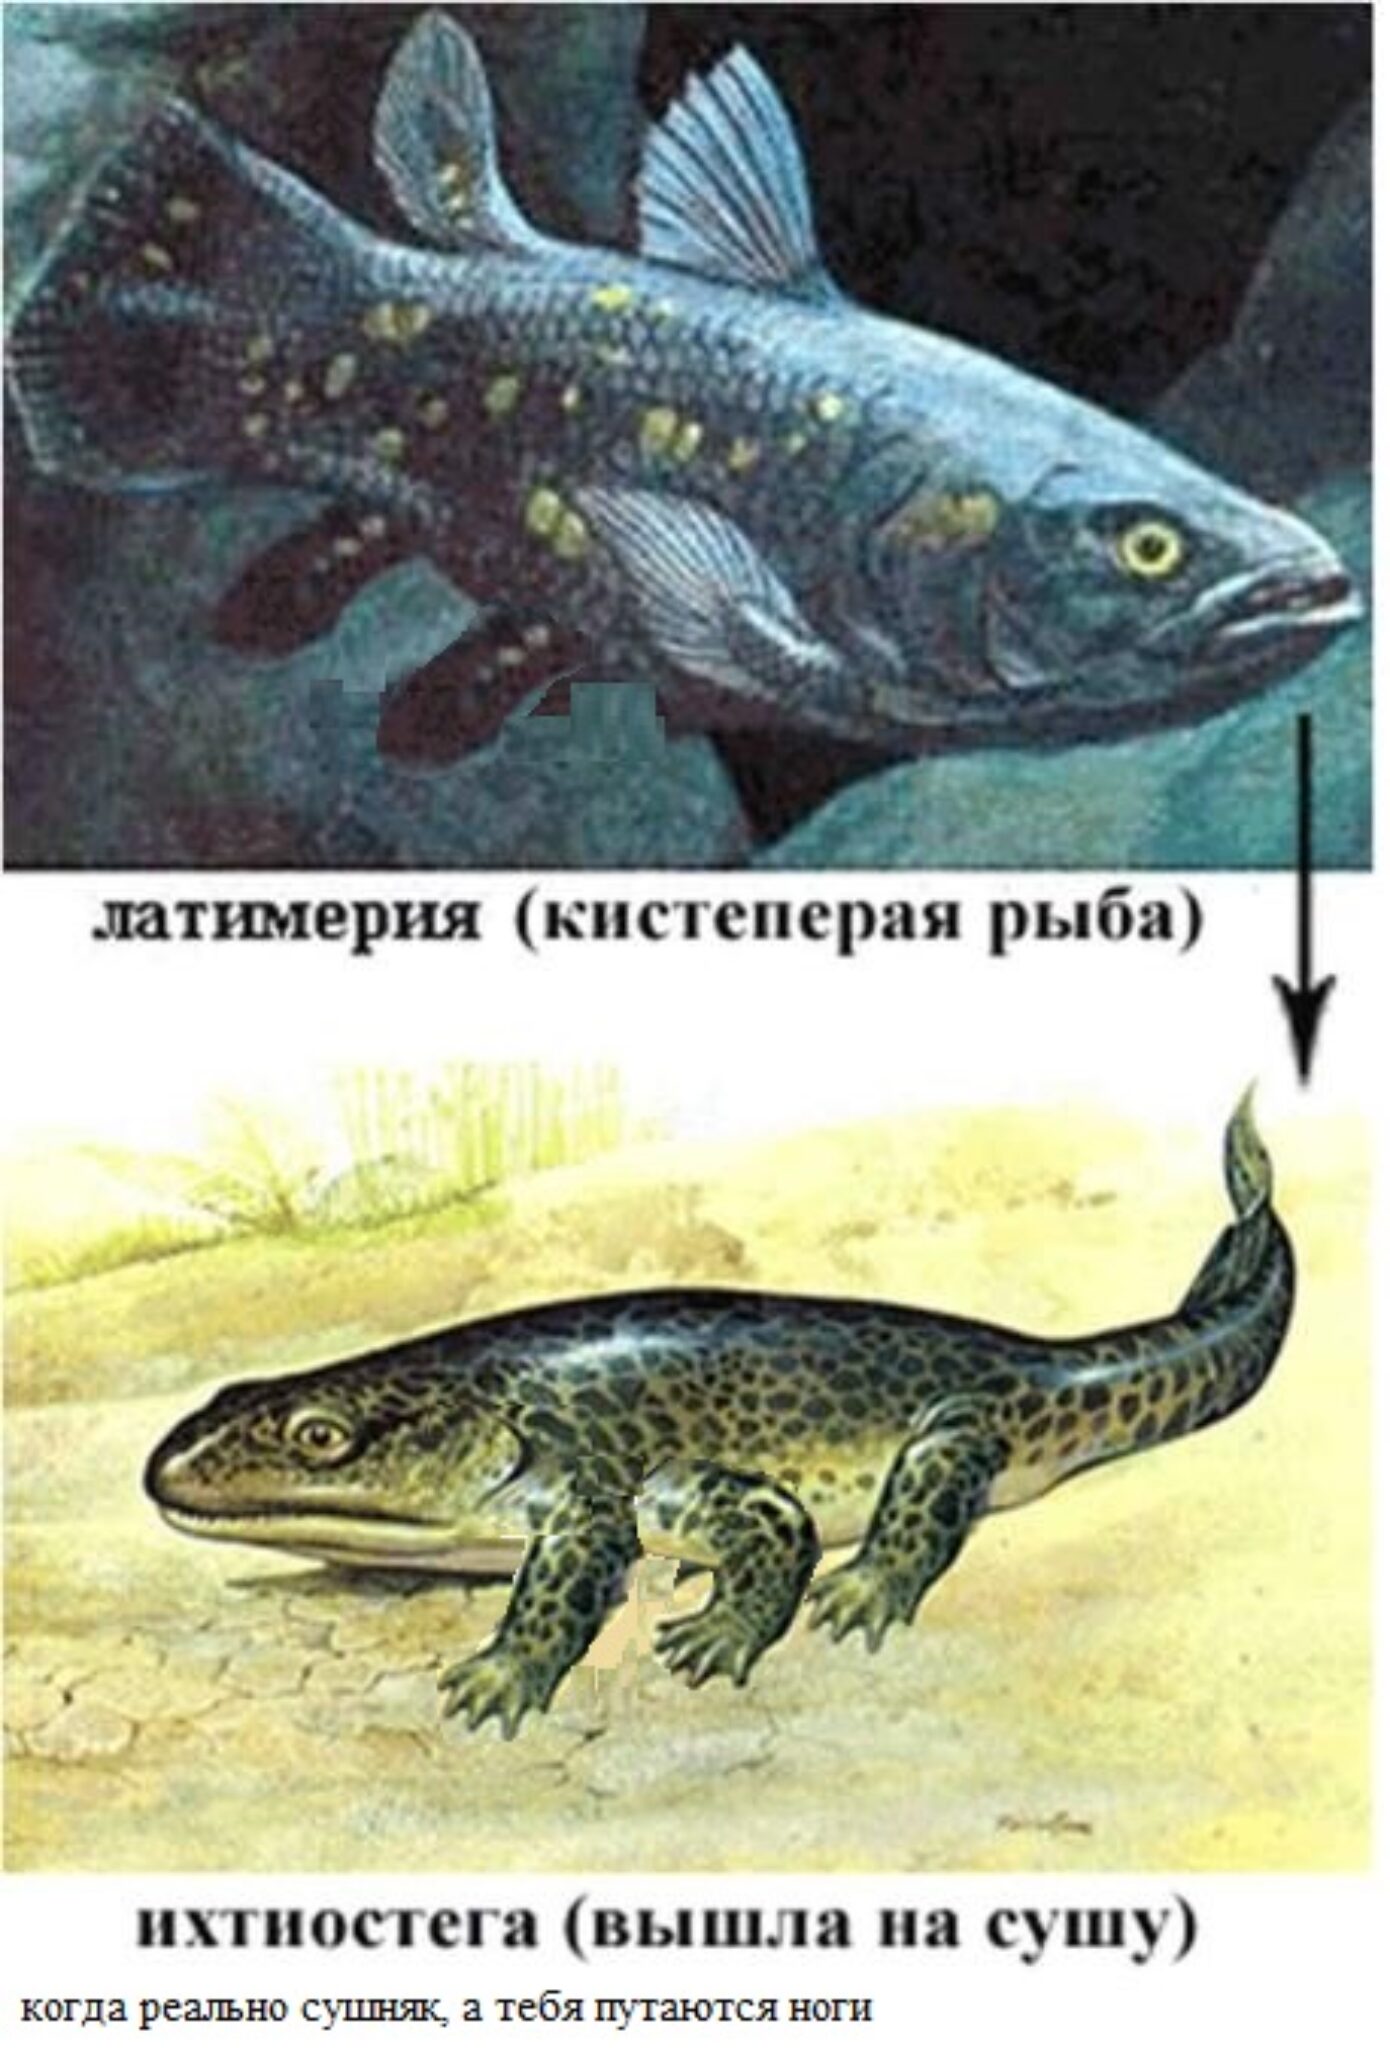 Появление первых рыб